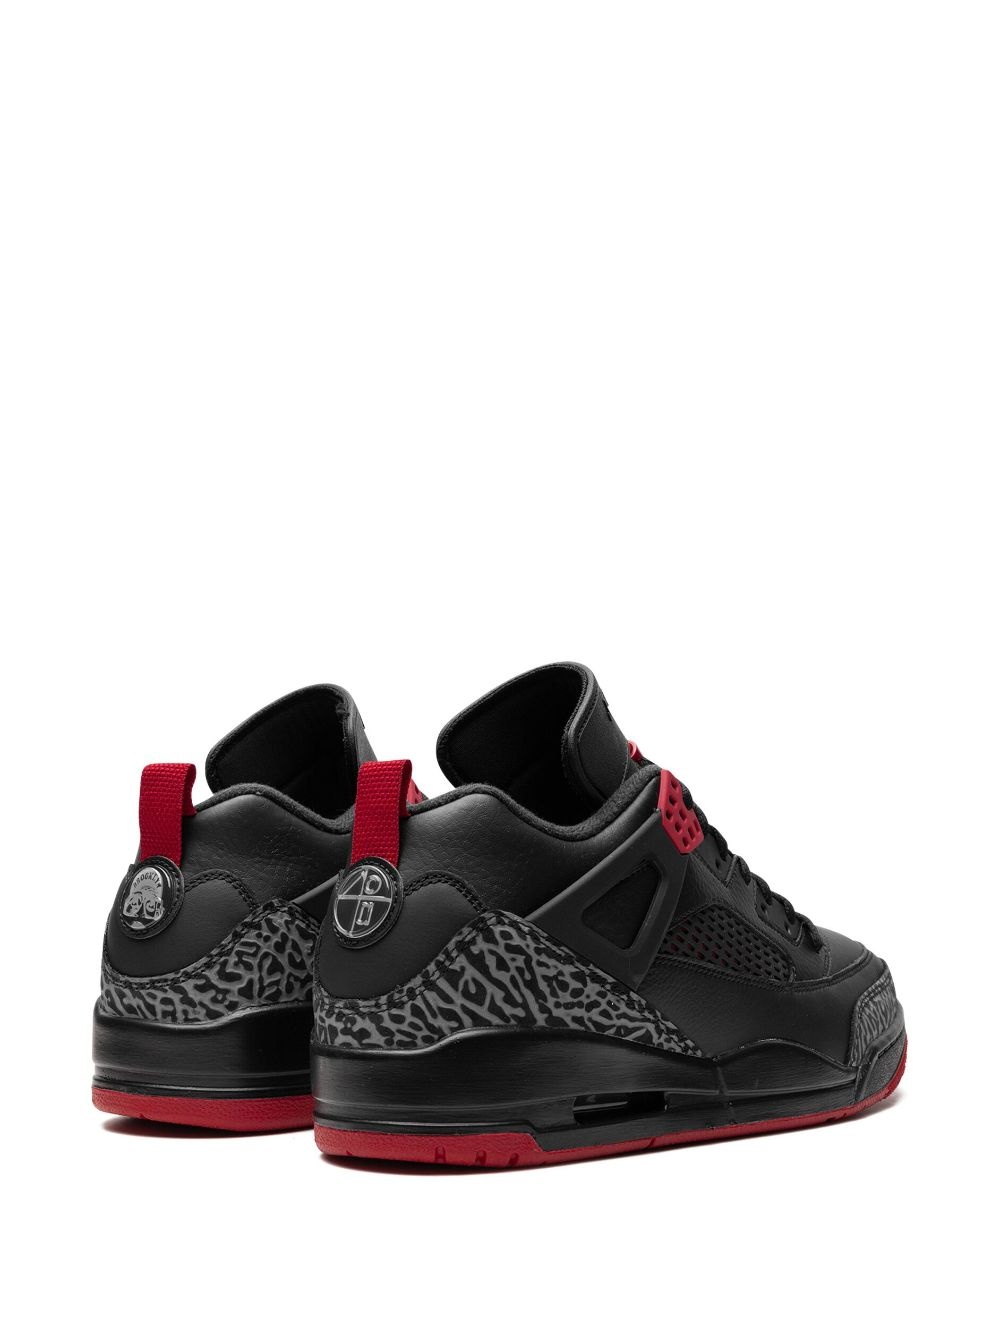 Air Jordan Spizike Low "Bred" sneakers - 3